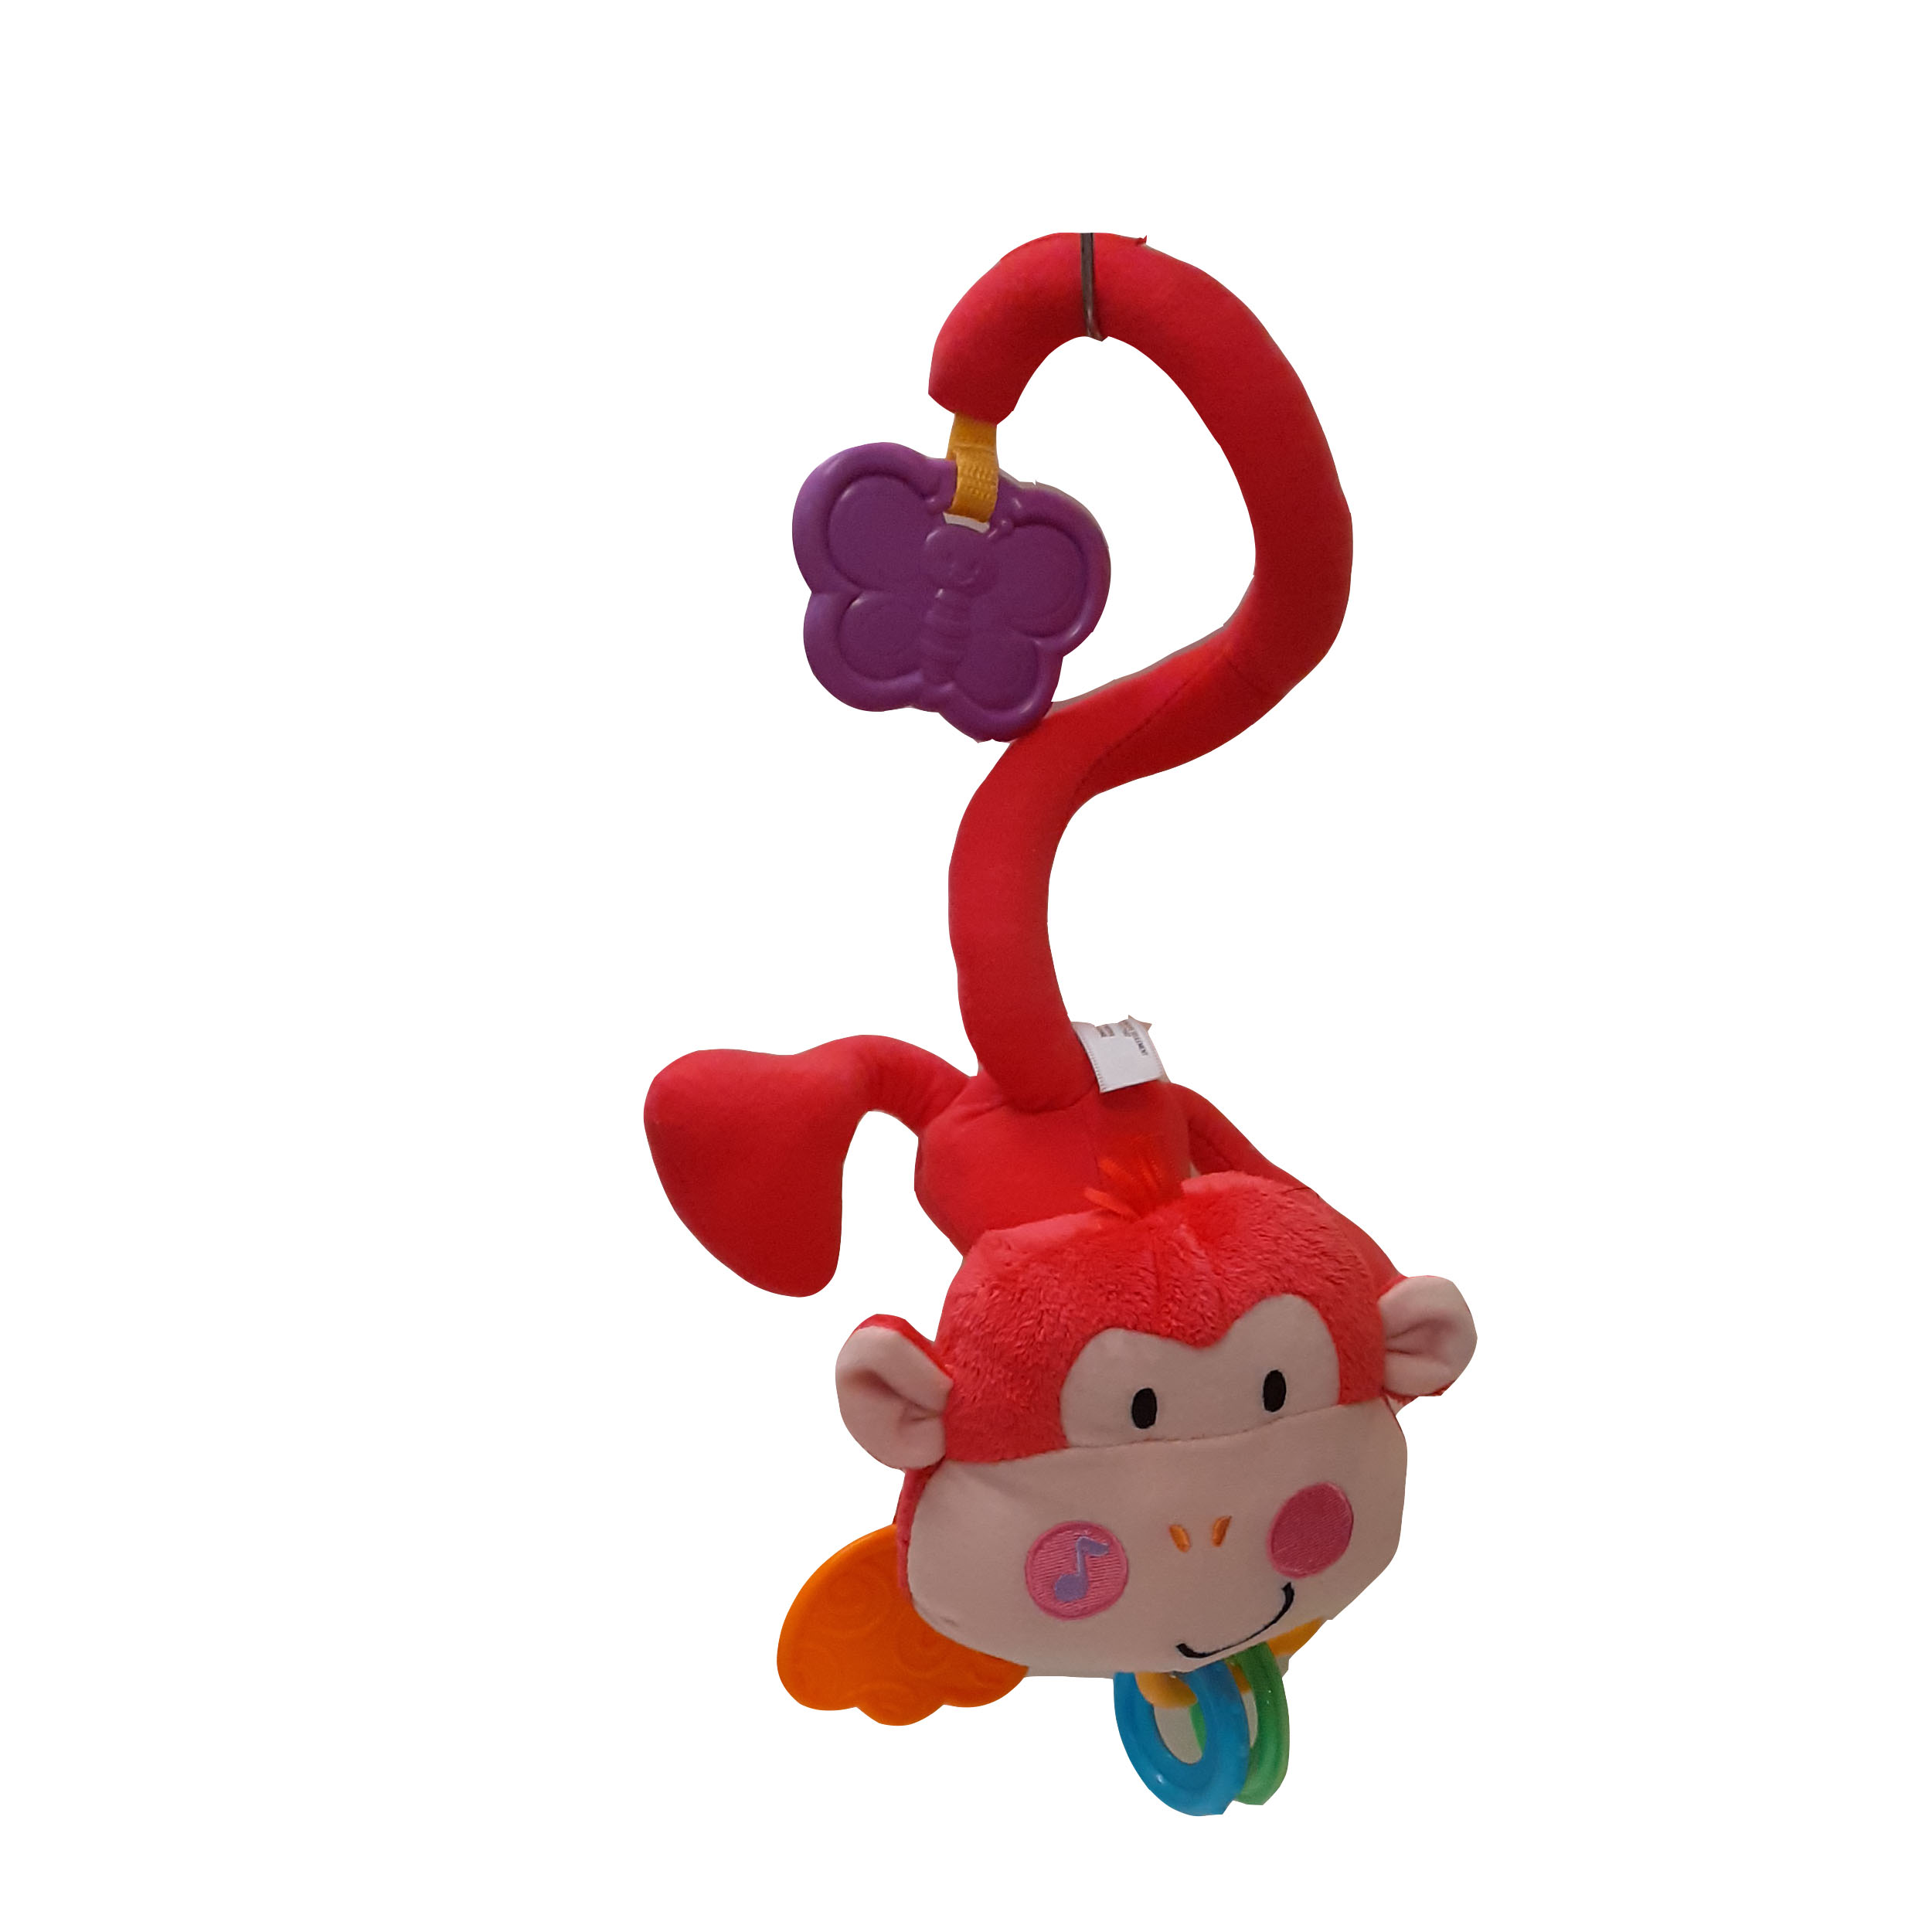 آویز تخت کودک مدل میمون